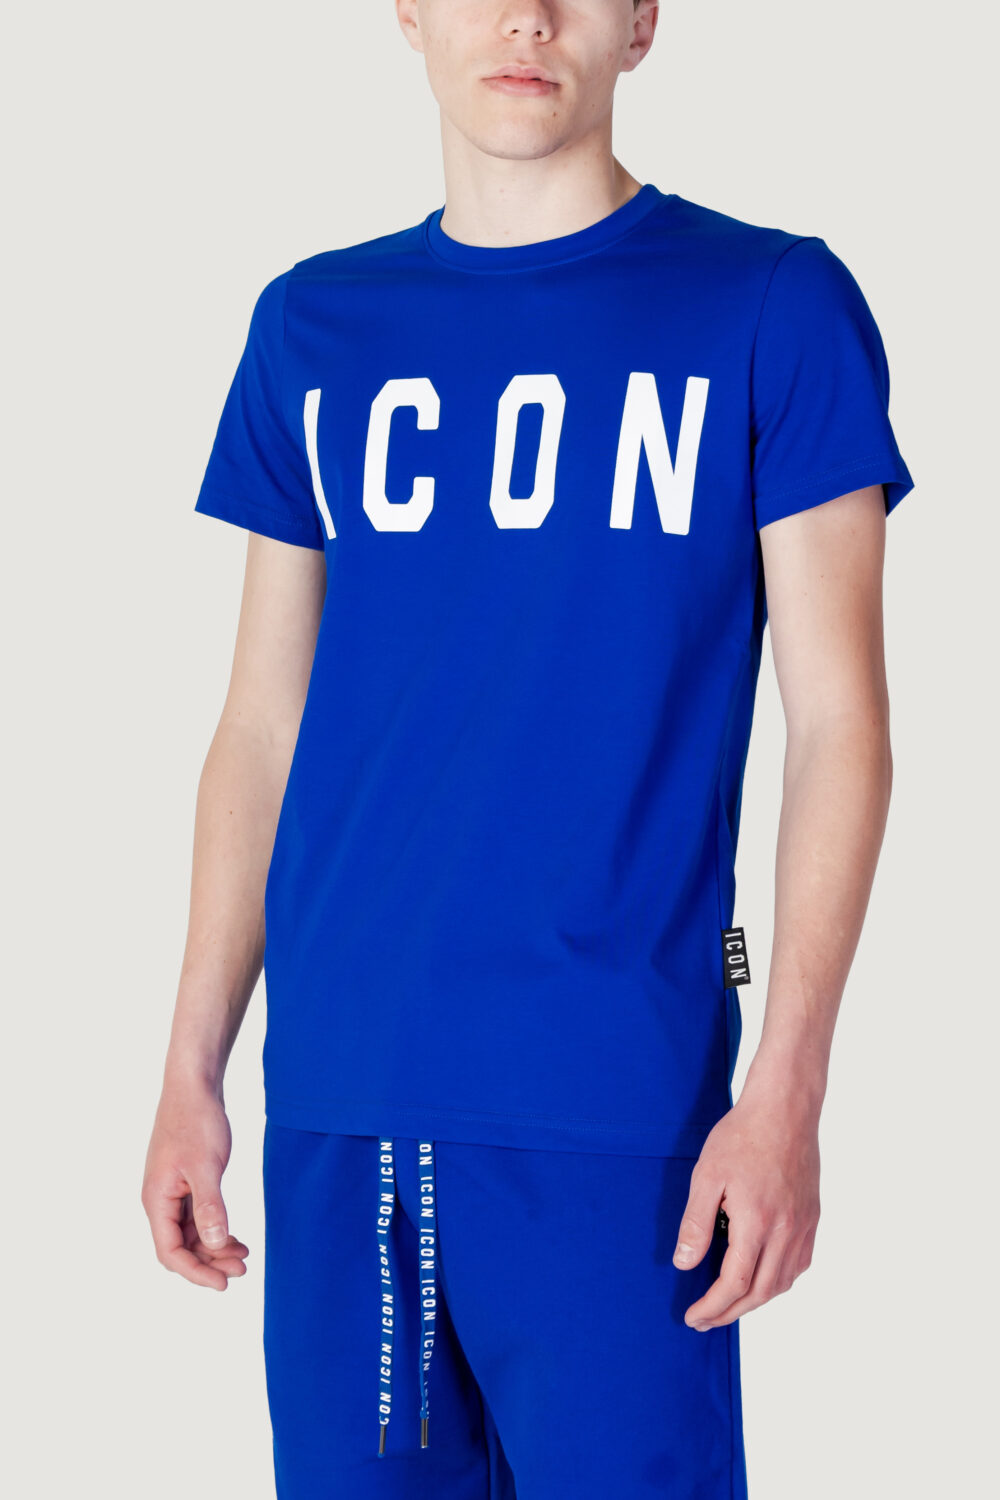 T-shirt Icon LOGO Blu - Foto 1